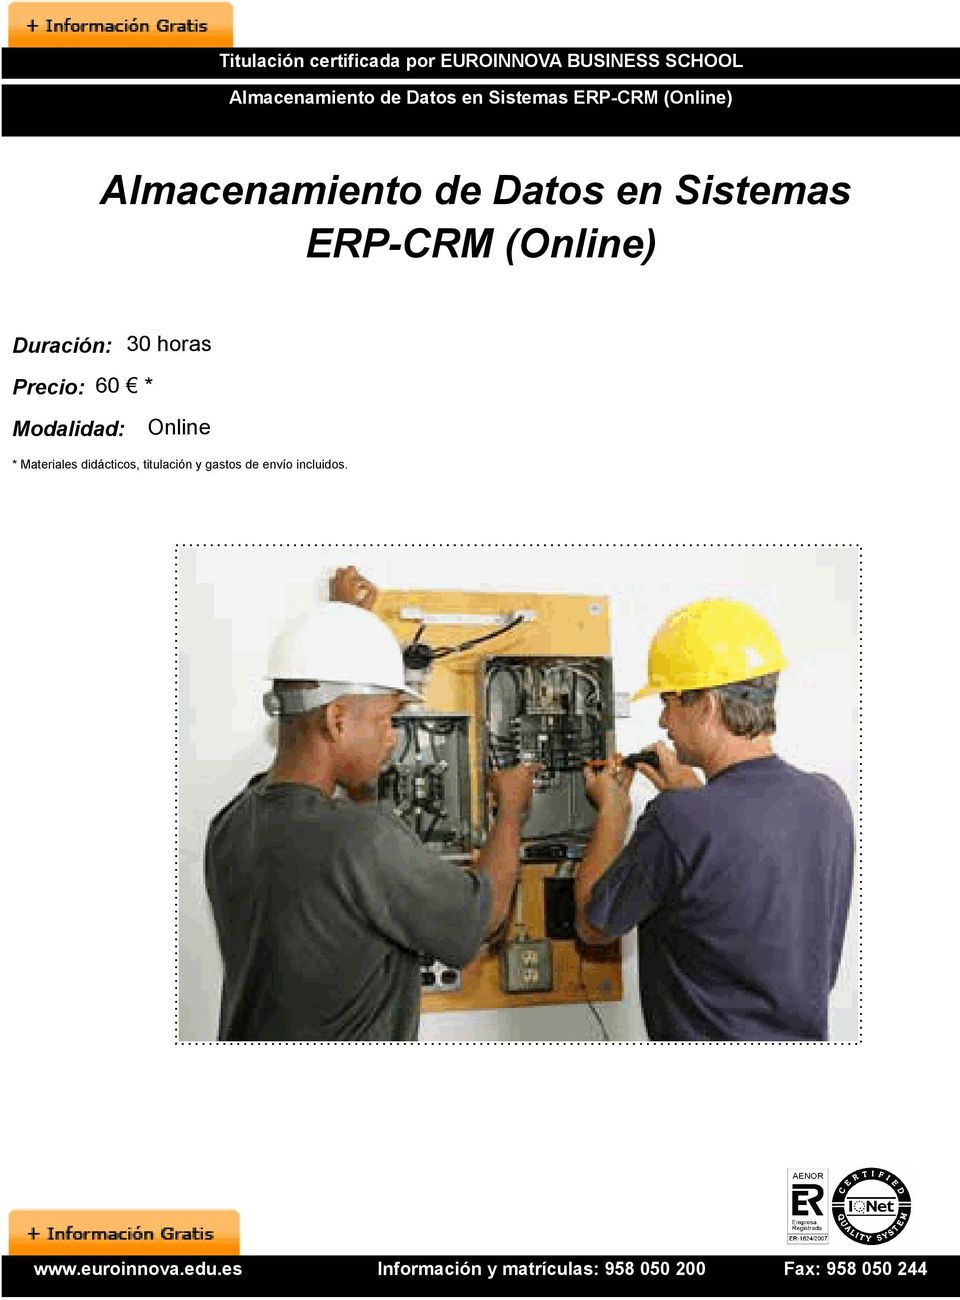 Sistemas ERP-CRM (Online) Duración: 30 horas Precio: 60 * Modalidad: